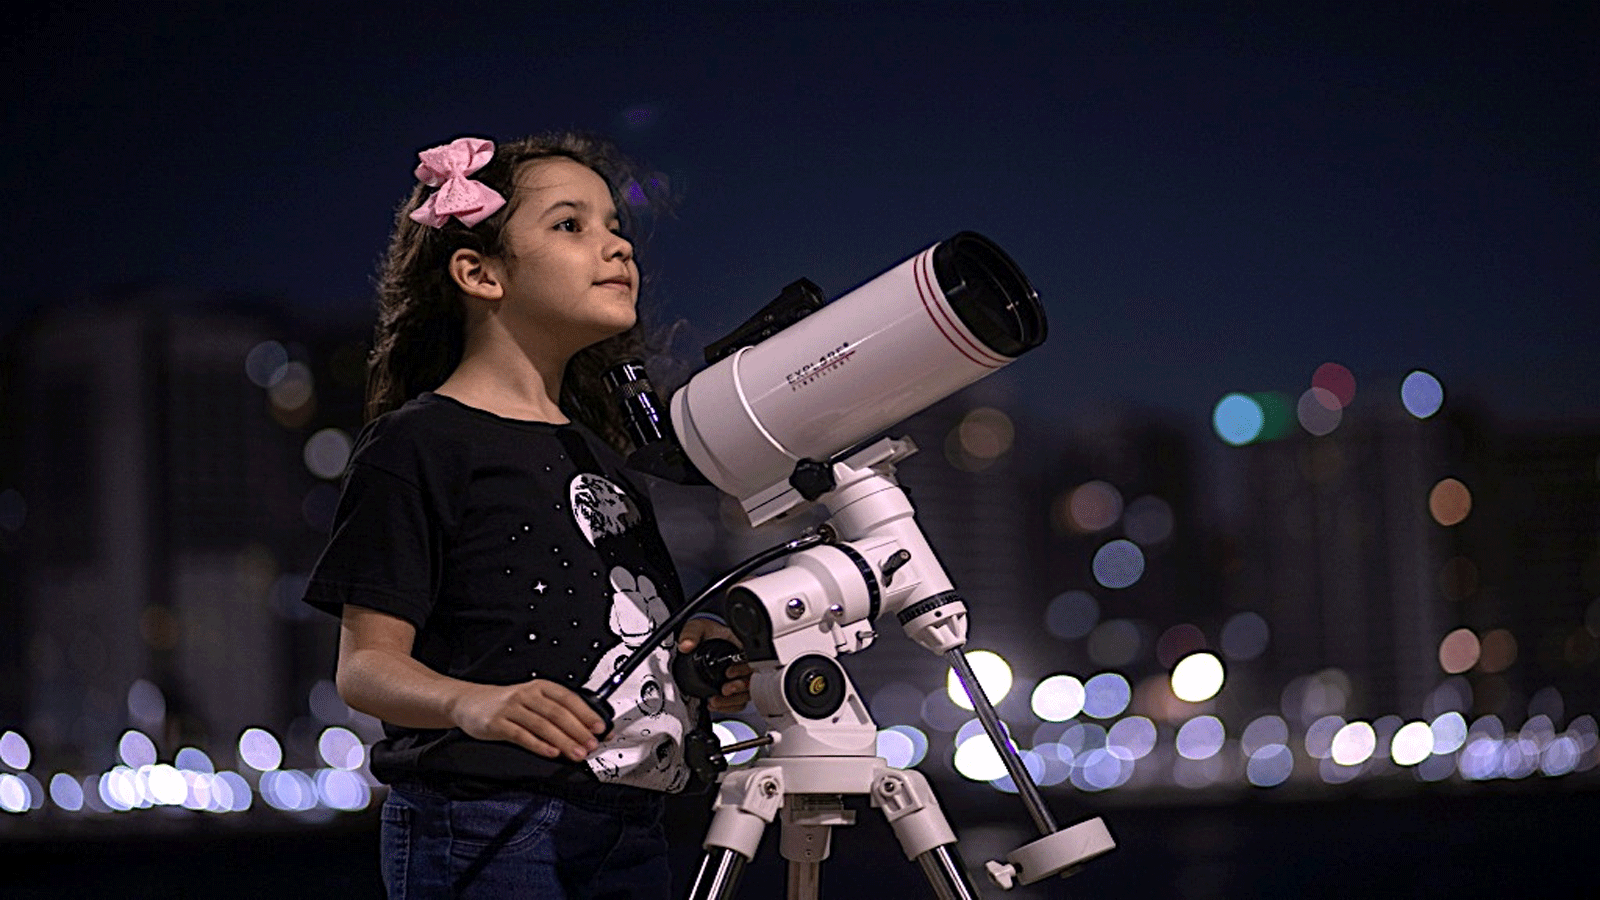 عالمة الفلك البرازيلية نيكول أوليفيرا، البالغة من العمر 8 سنوات، تقف لالتقاط صورة مع تلسكوبها في فورتاليزا، البرازيل. في 21 أيلول\ سبتمبر 2021